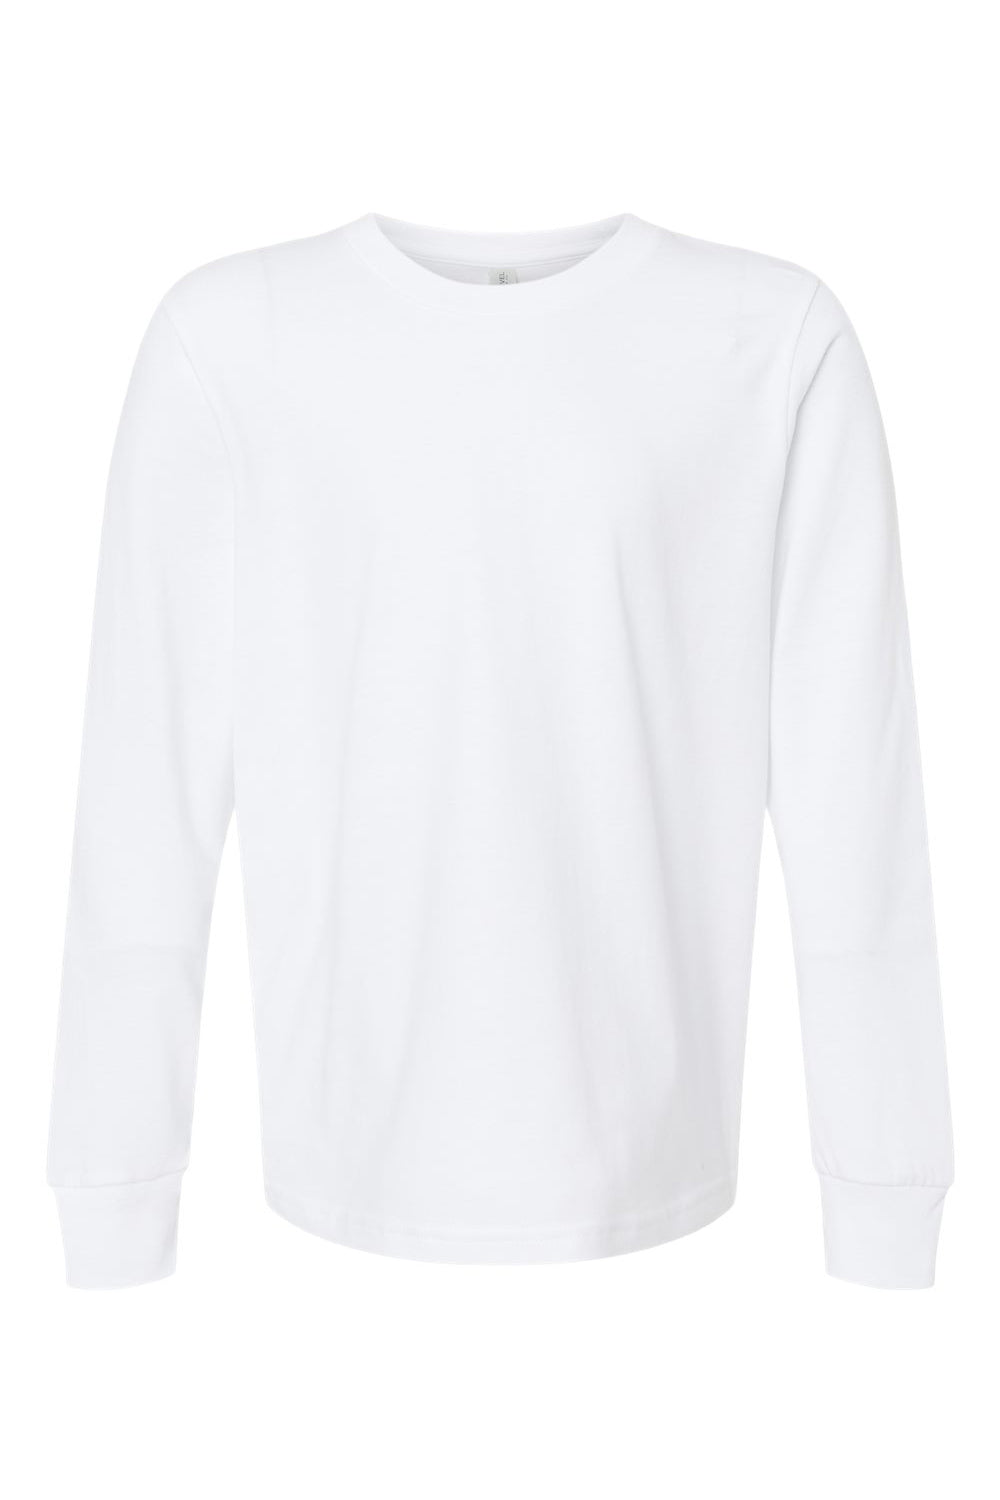 Next Level 3311 Youth Long Sleeve Crewneck T-Shirt White Flat Front